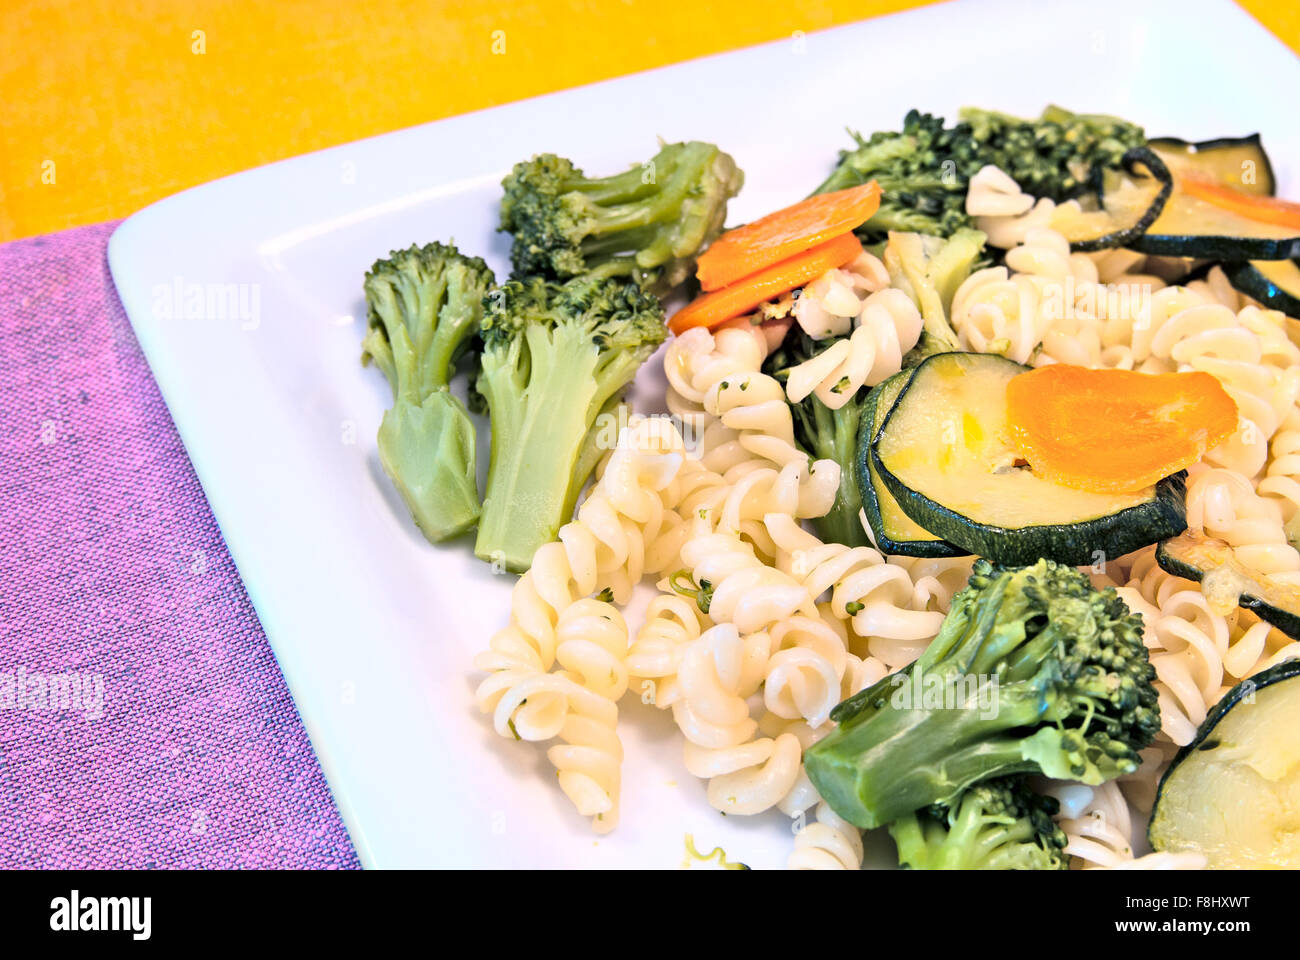 Italian pasta girandole with broccoli, zucchini and carrot Stock Photo